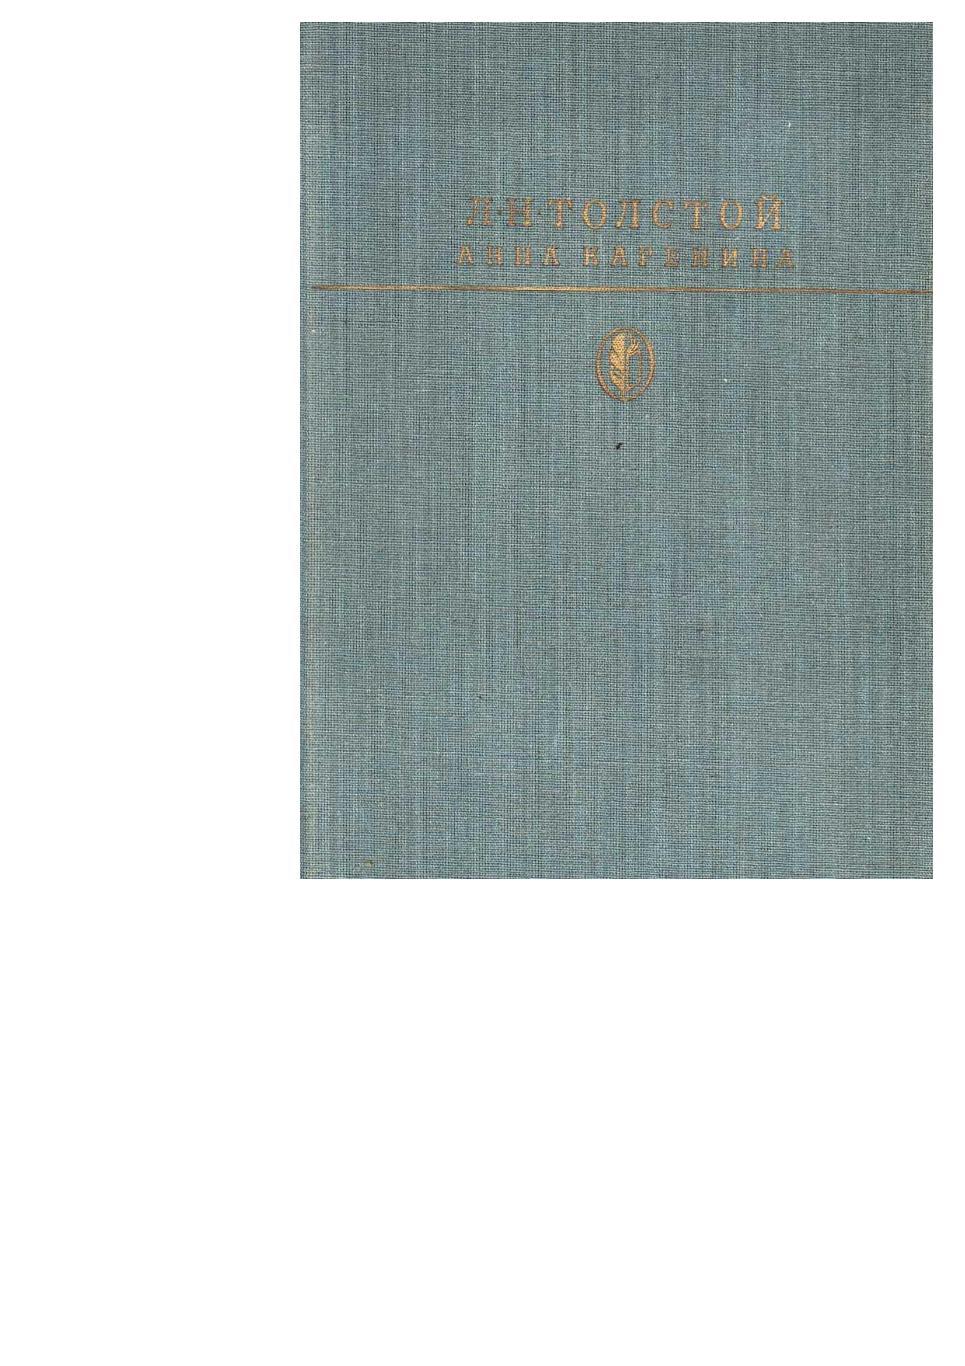 Толстой Л.Н. Анна Каренина. Роман. – М., 1988. Библиотека классики.